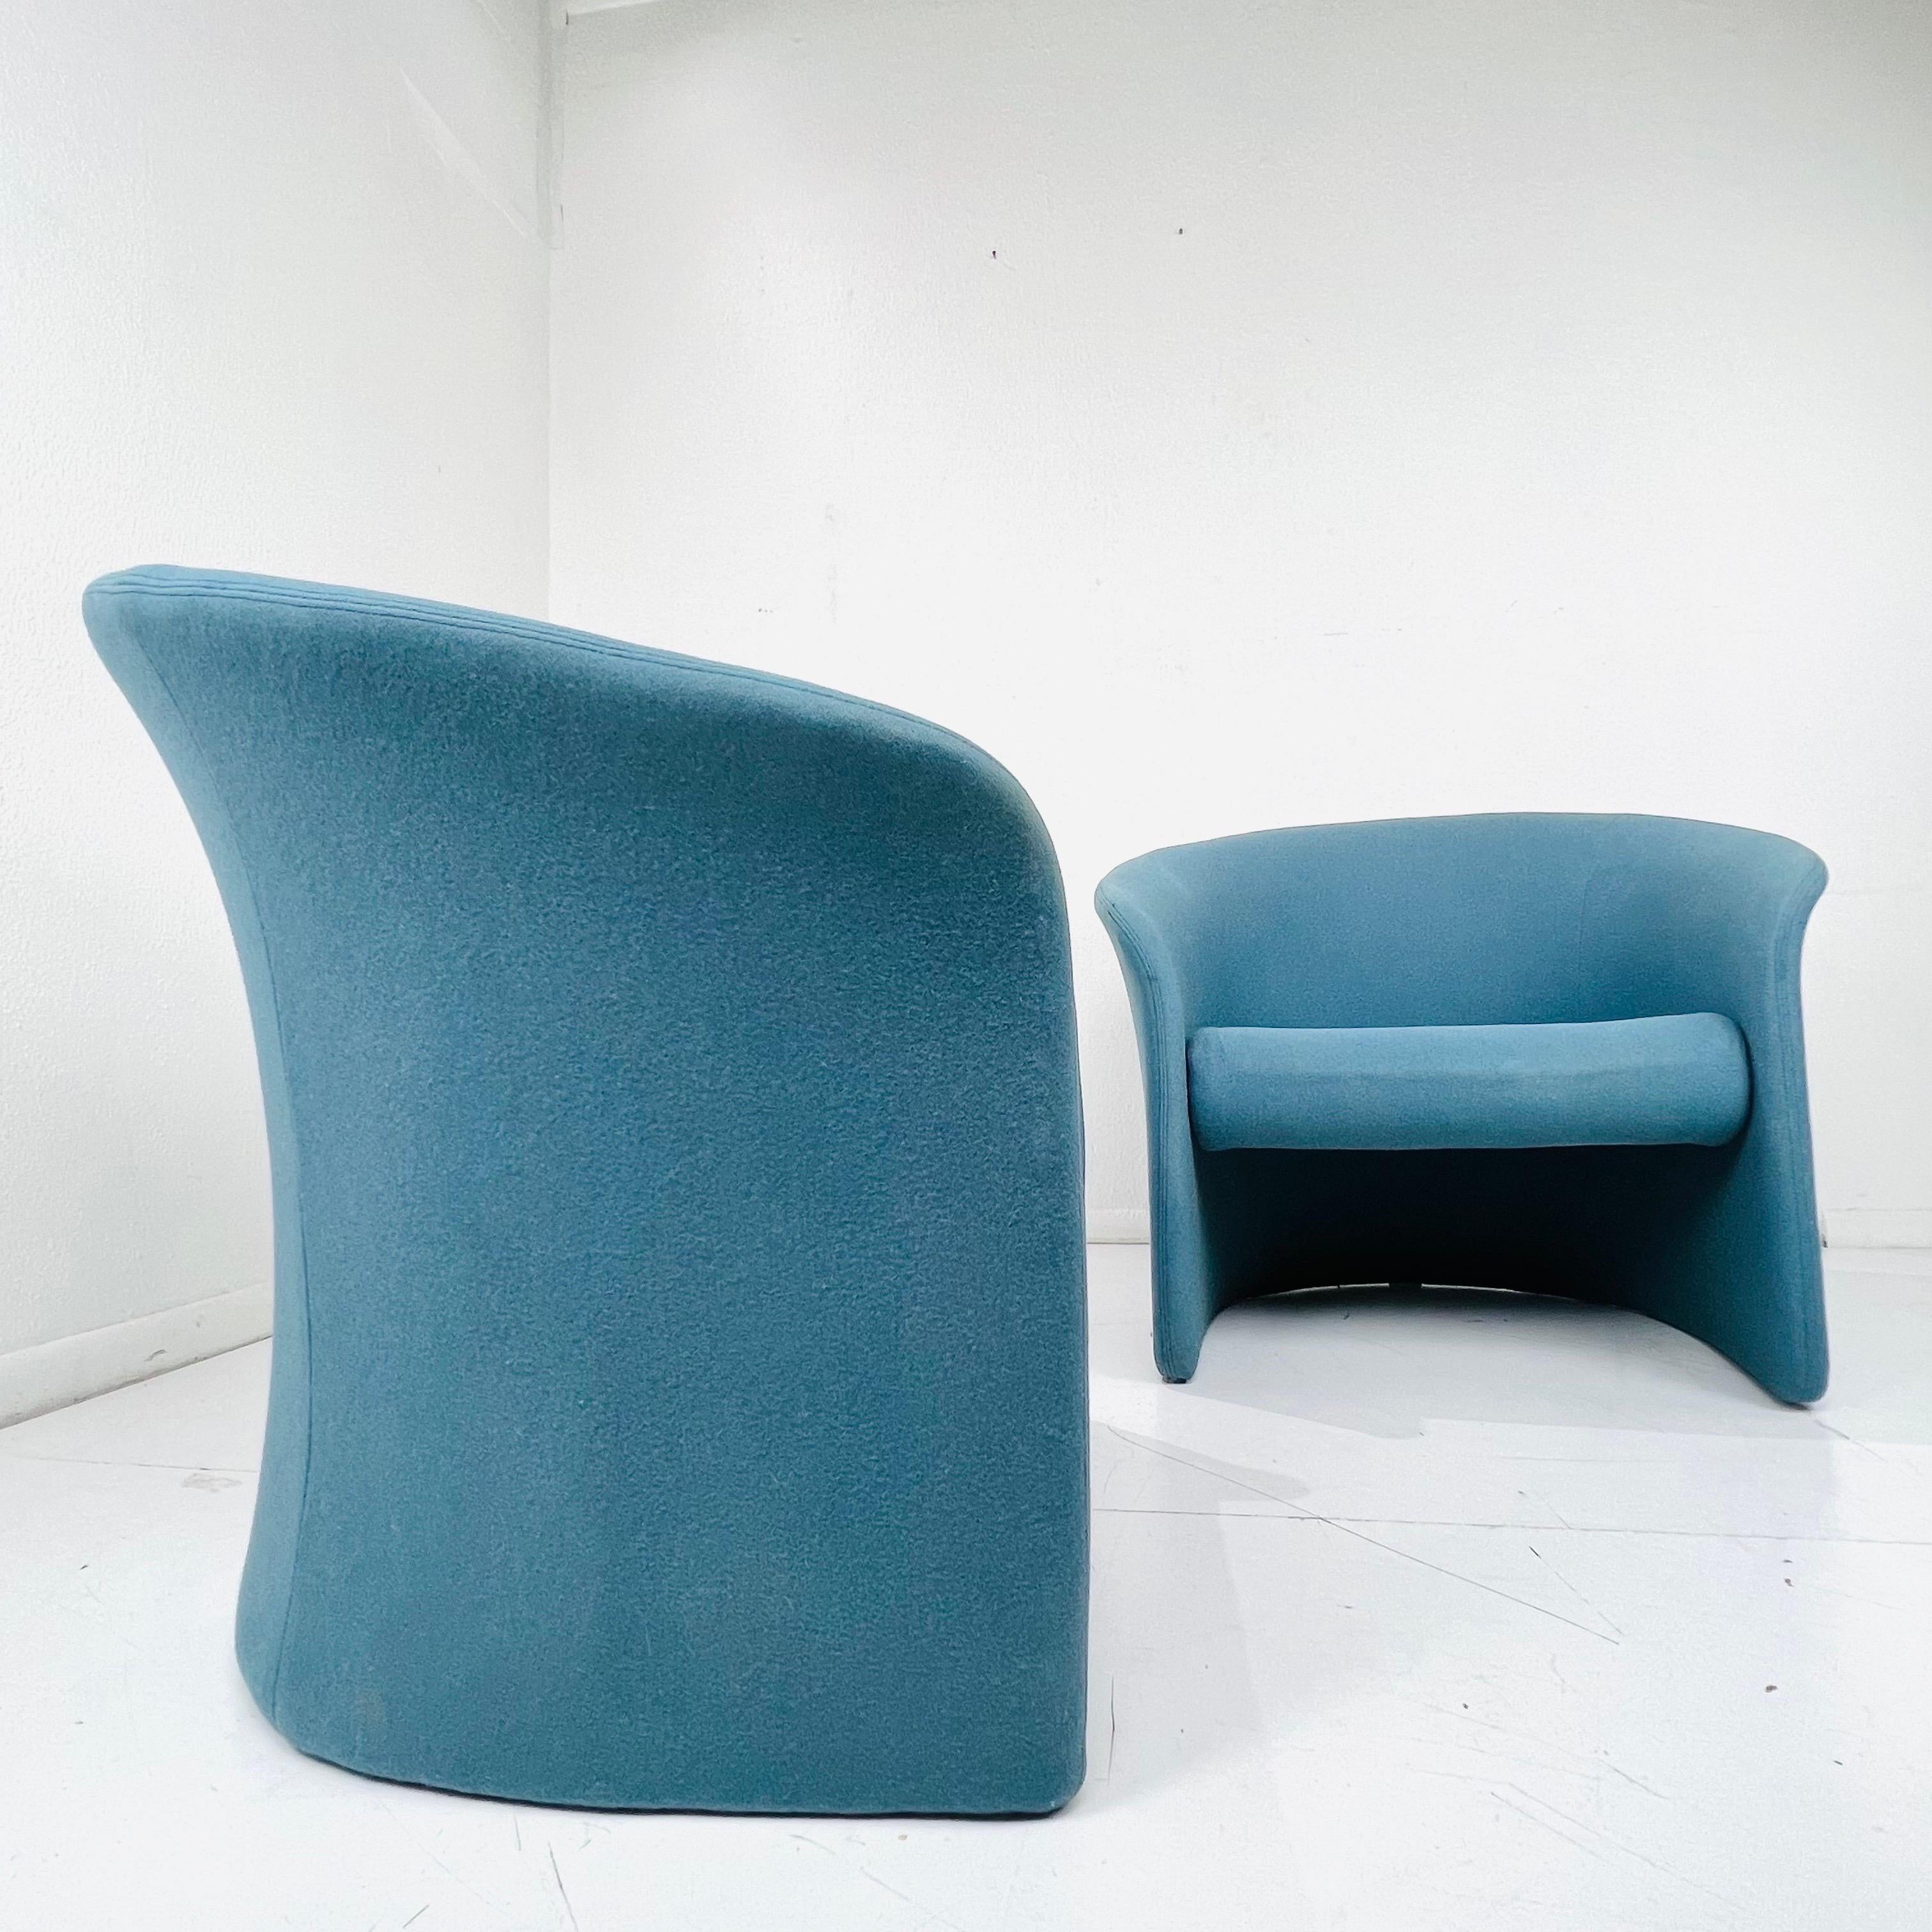 Vintage Paar postmoderne Rotonda Wannenstühle von Massimo Vignelli für Sunar Hauserman , 1979. Sie zeichnen sich durch eine sanft geschwungene Rückenlehne und Seitenteile mit einem schwebenden Sitz aus, der vollständig mit hellblauem Stoff bezogen